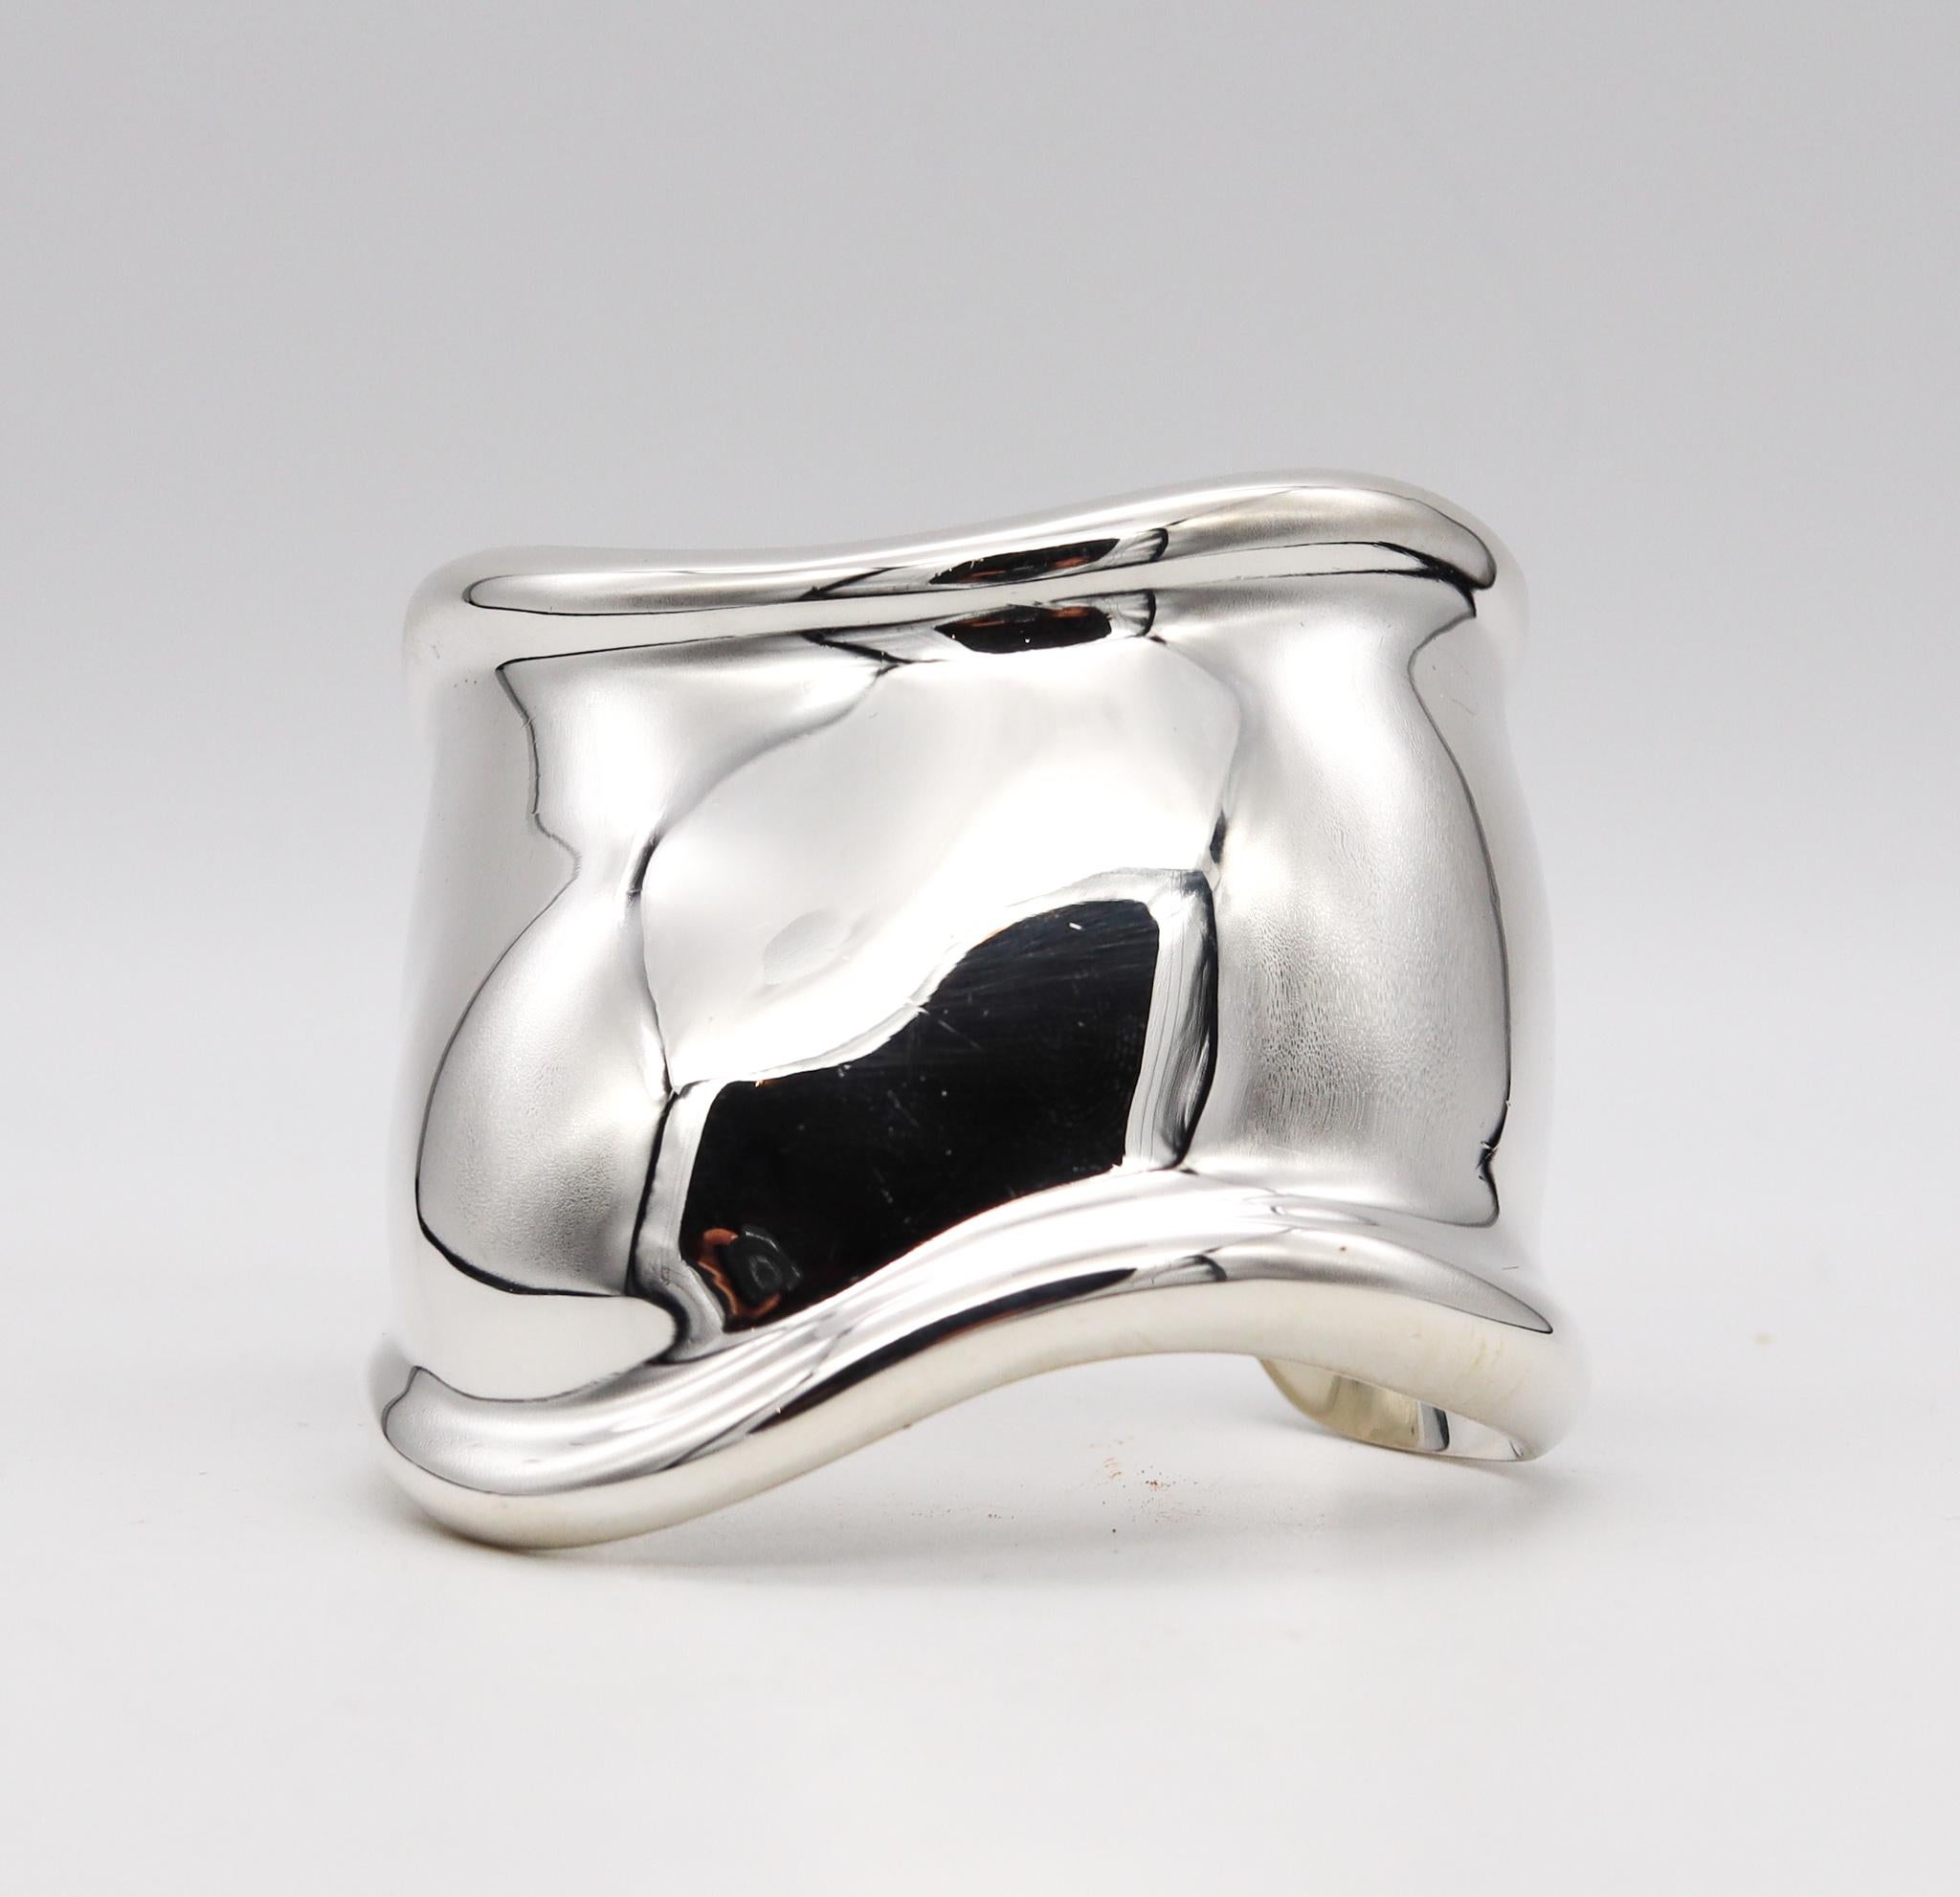 Vintage Manchette en os créée par Elsa Peretti (1940-2021) pour Tiffany & Co.

Cette manchette sculpturale est l'un des modèles les plus emblématiques, créé par Peretti pour les studios Tiffany et issu des créations de bijoux du 20e siècle. Ce